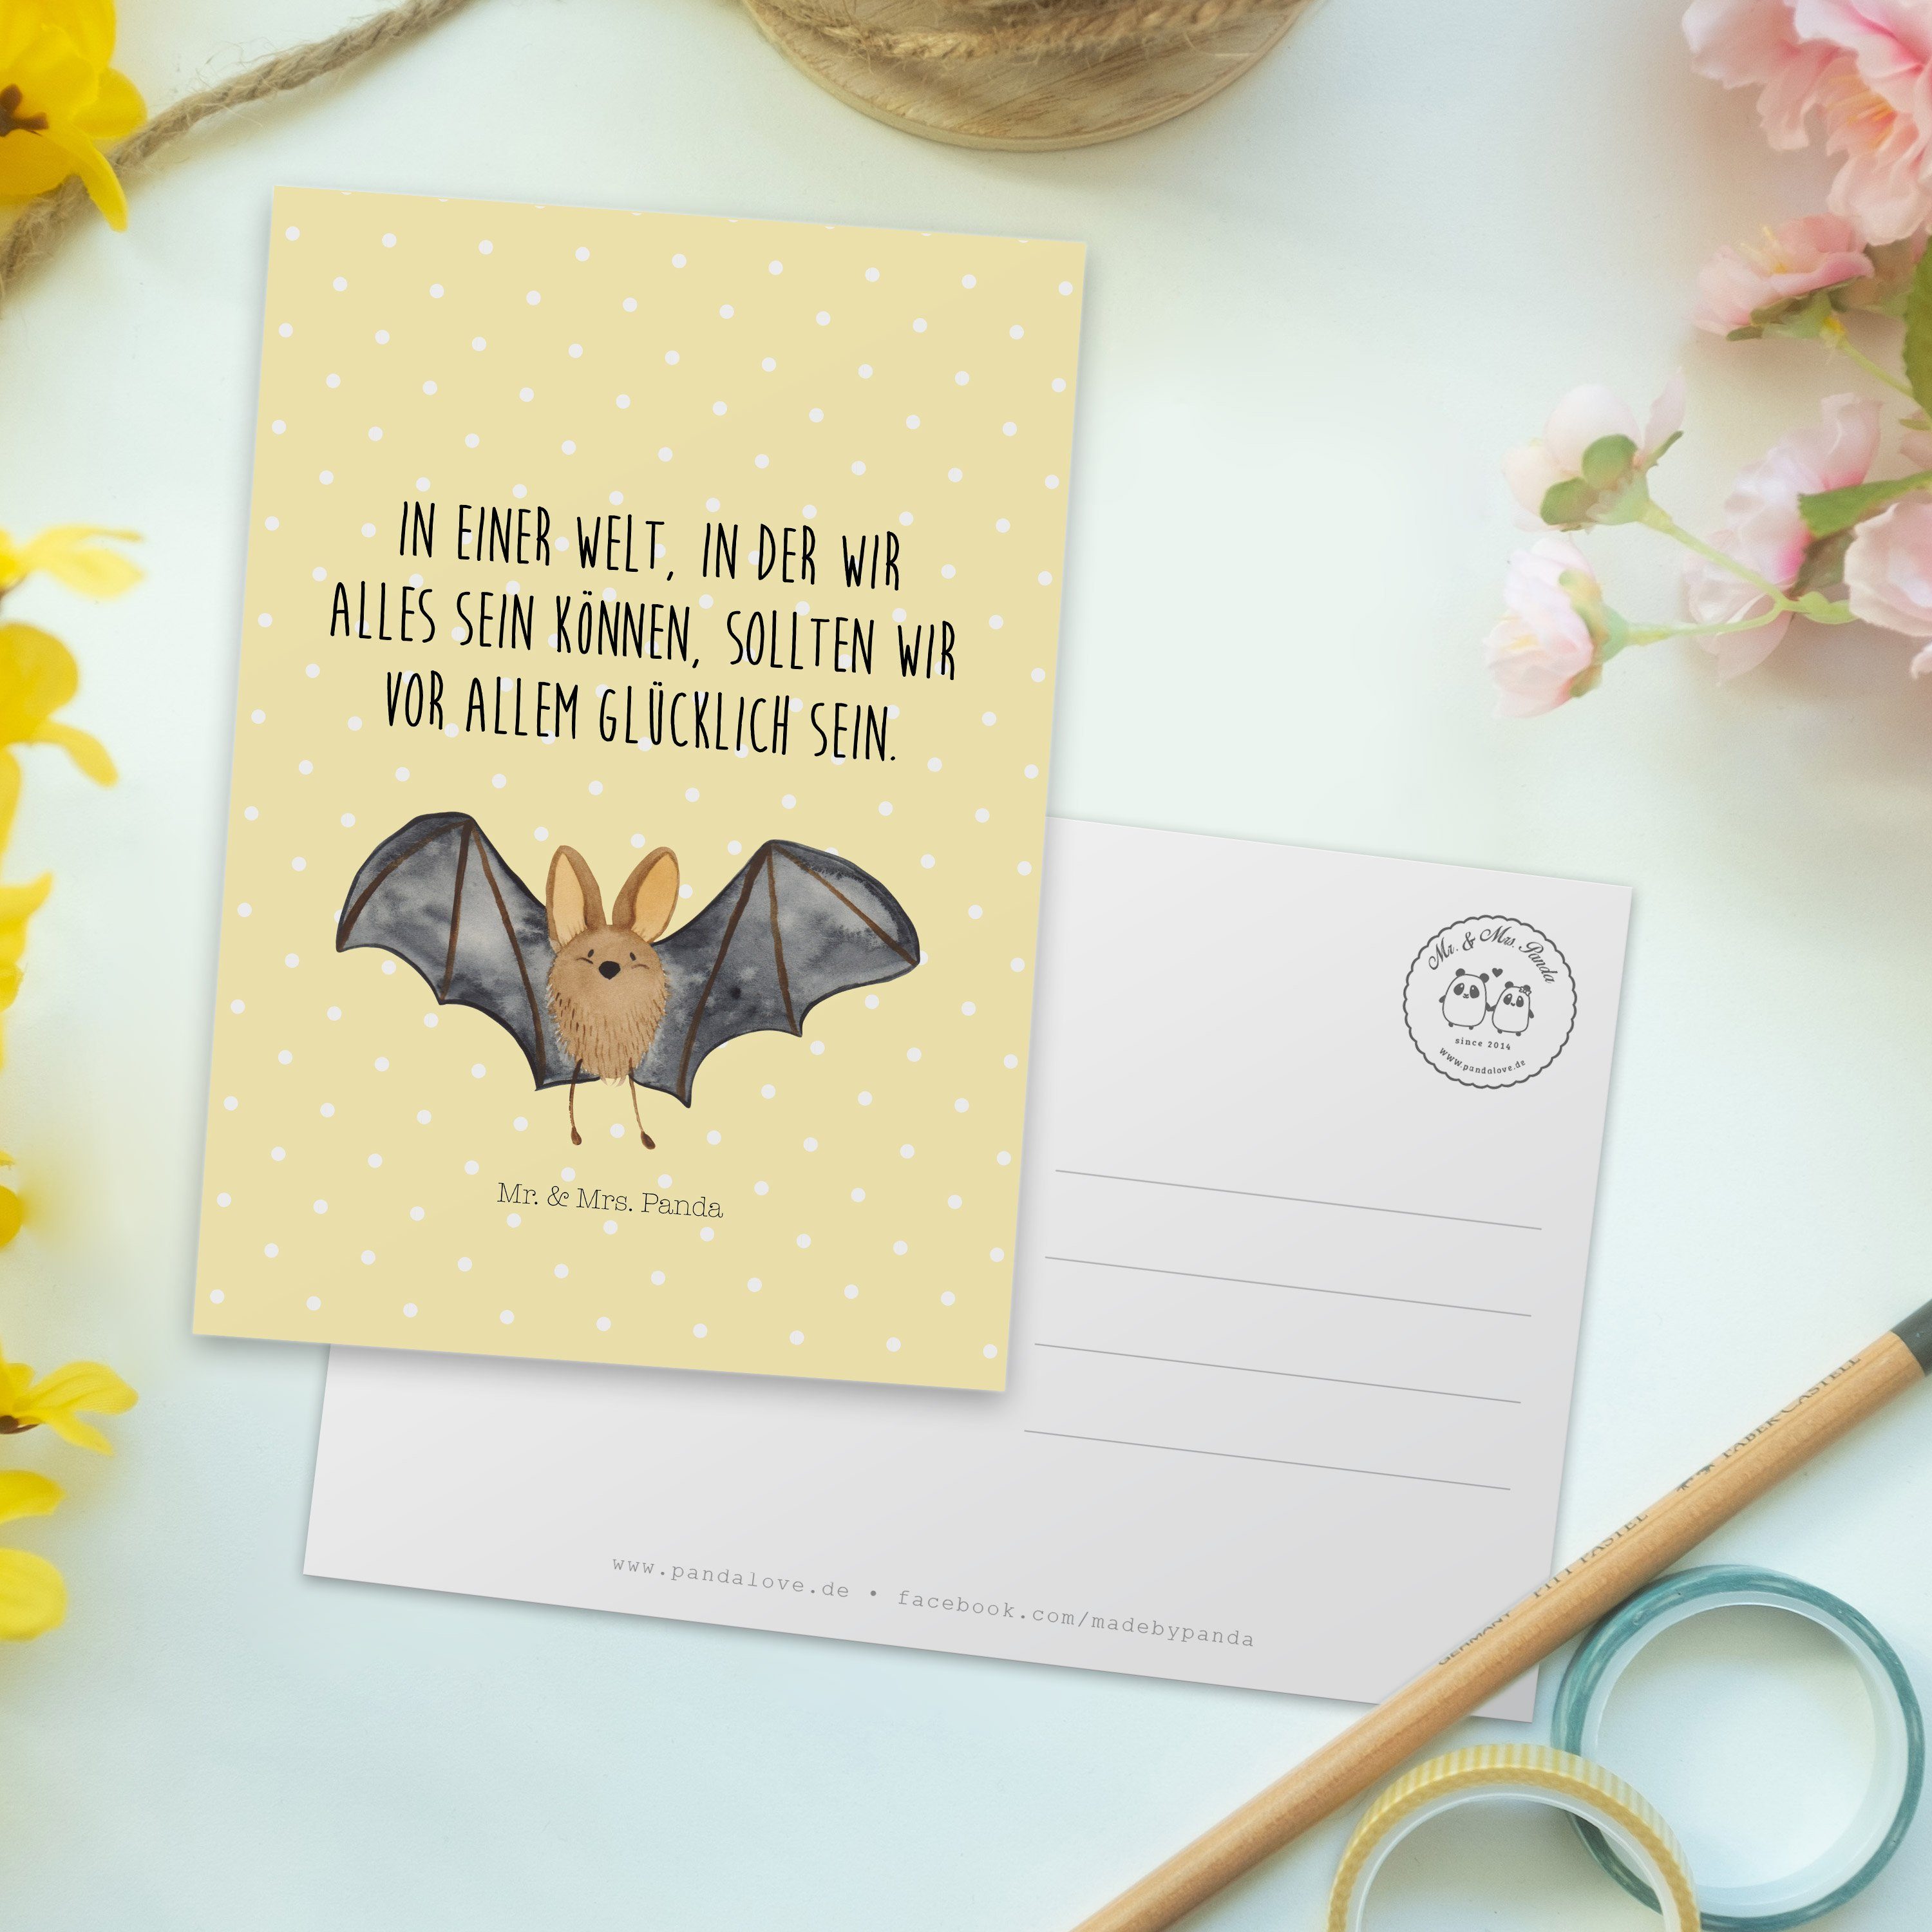 Mr. & Mrs. Pastell Einladu Panda - - Flügel Gelb Fledermaus Geschenk, Einladungskarte, Postkarte